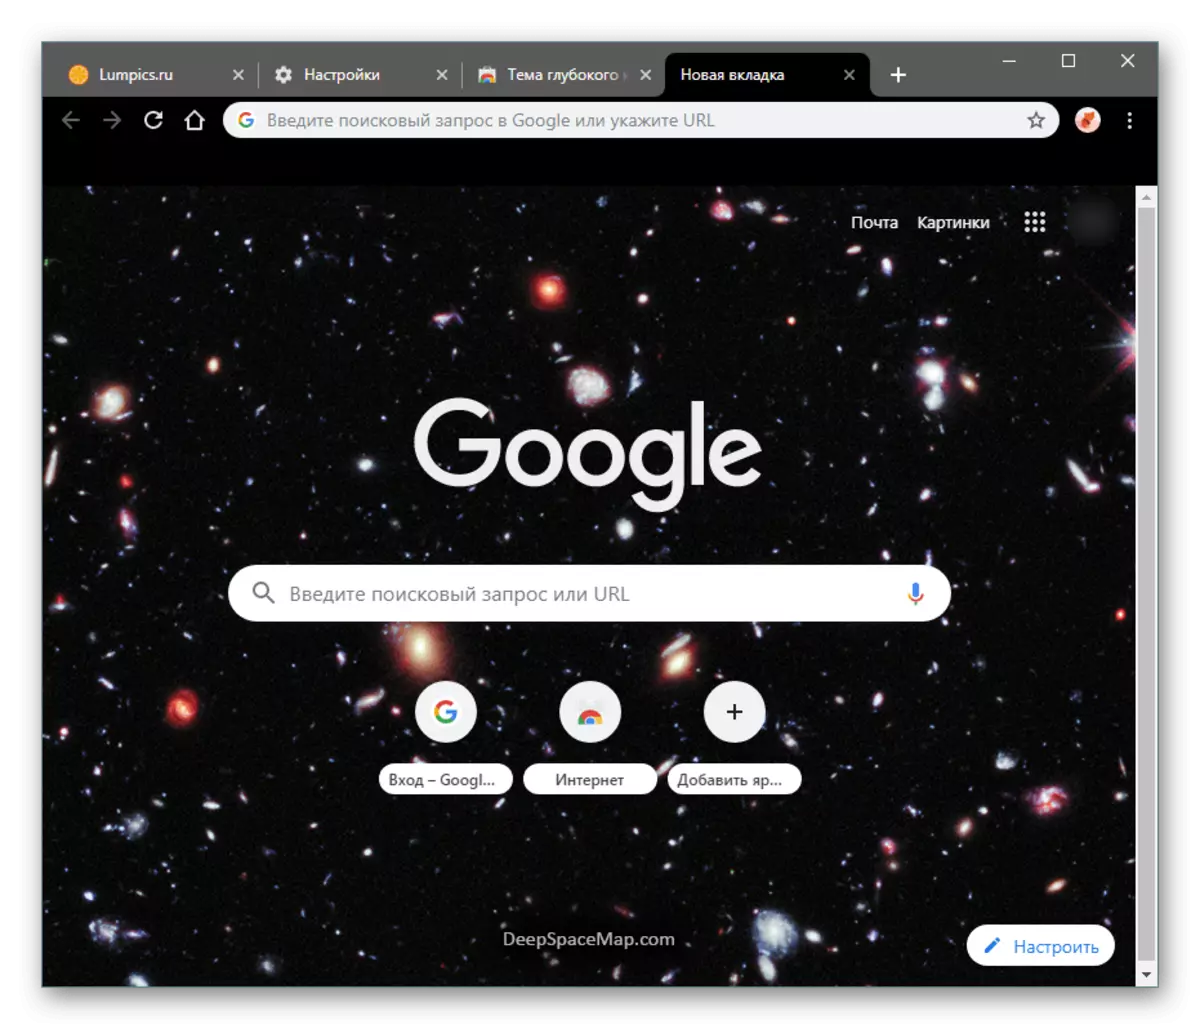 Оригінальний фон теми оформлення в новій вкладці в Google Chrome